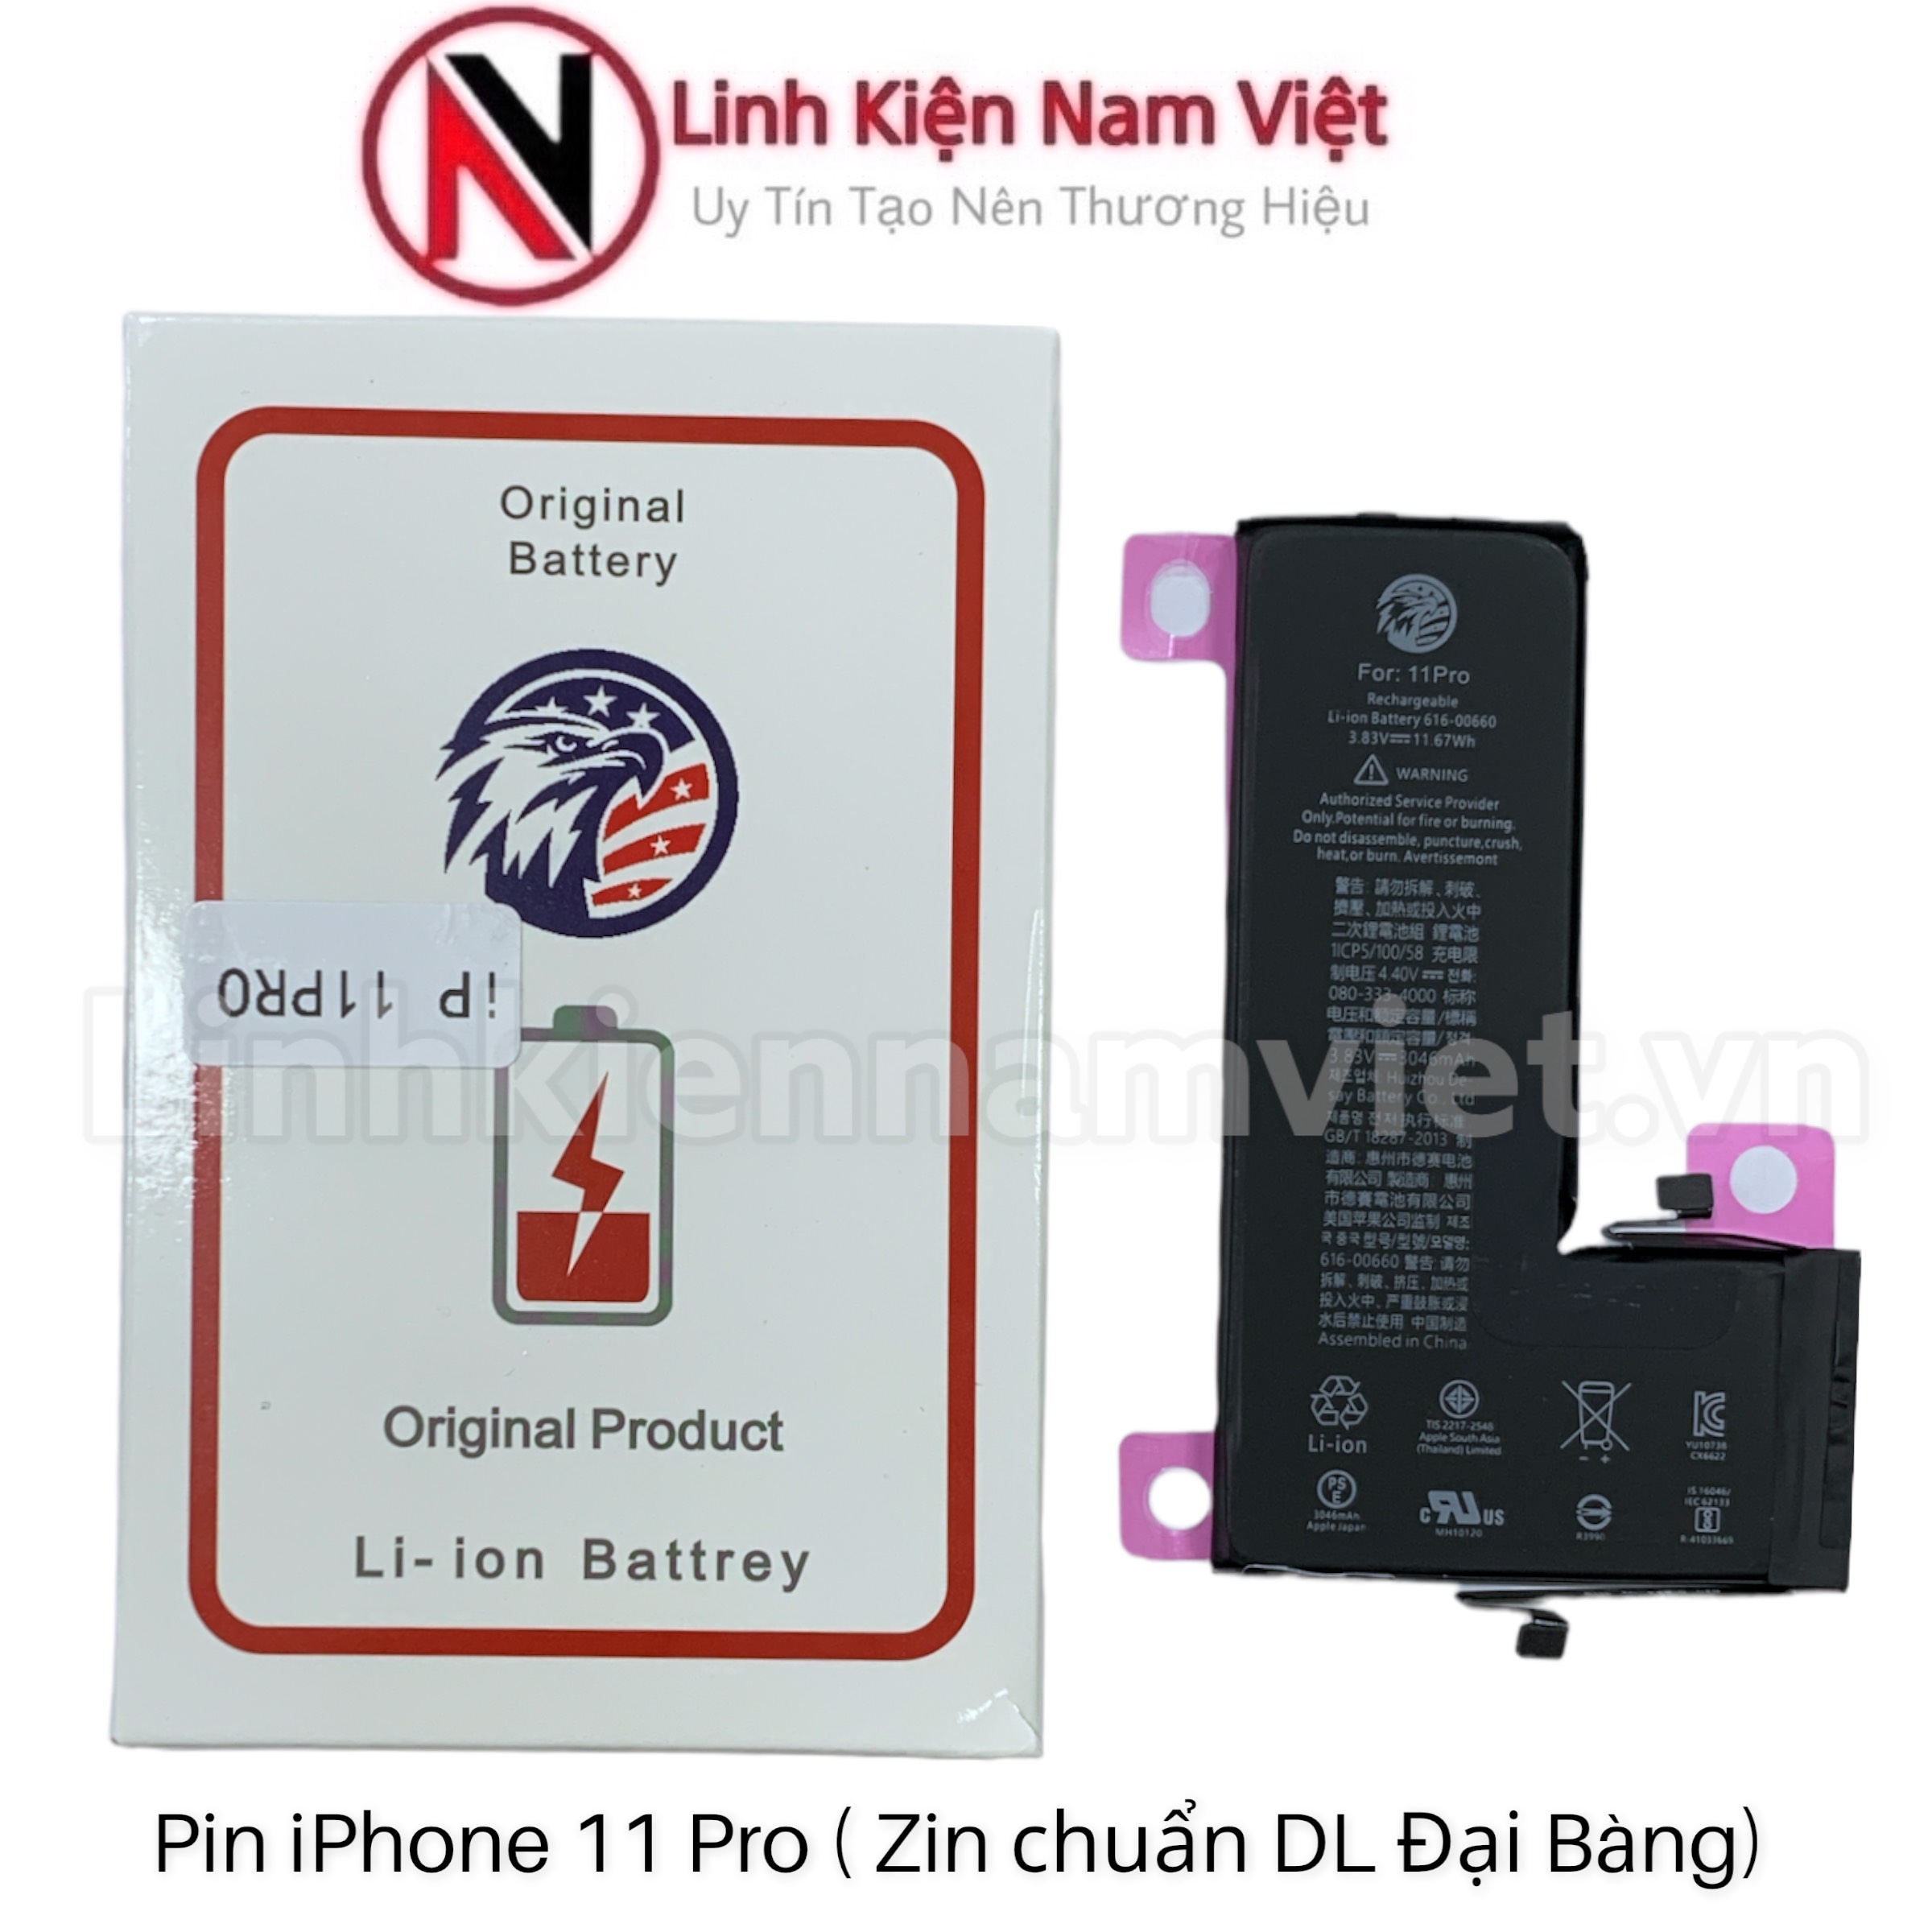 Dung lượng pin của iPhone 7 thấp, nhưng dùng có tốt không? - Fptshop.com.vn